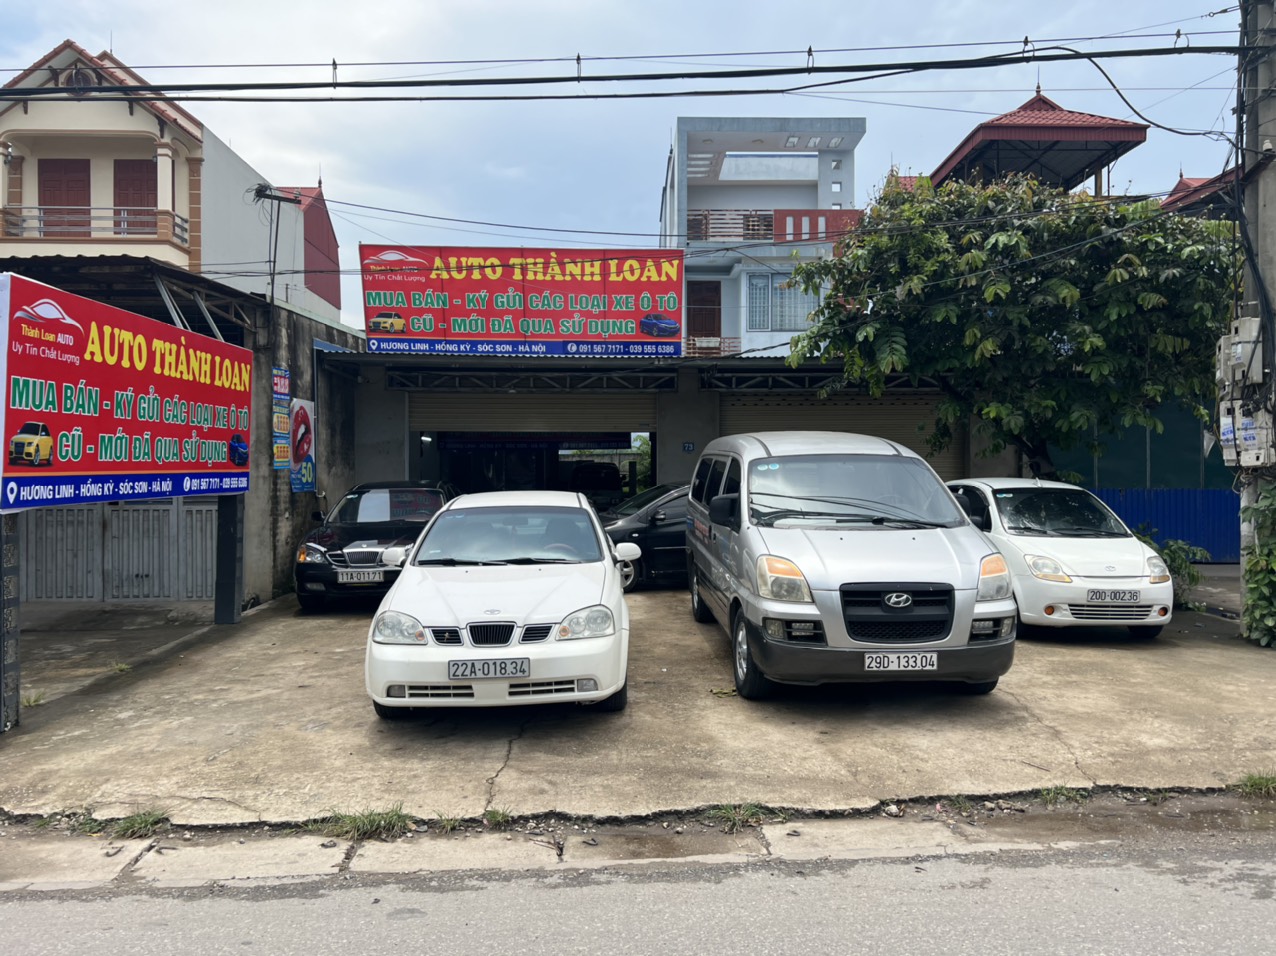 Auto Thành Loan